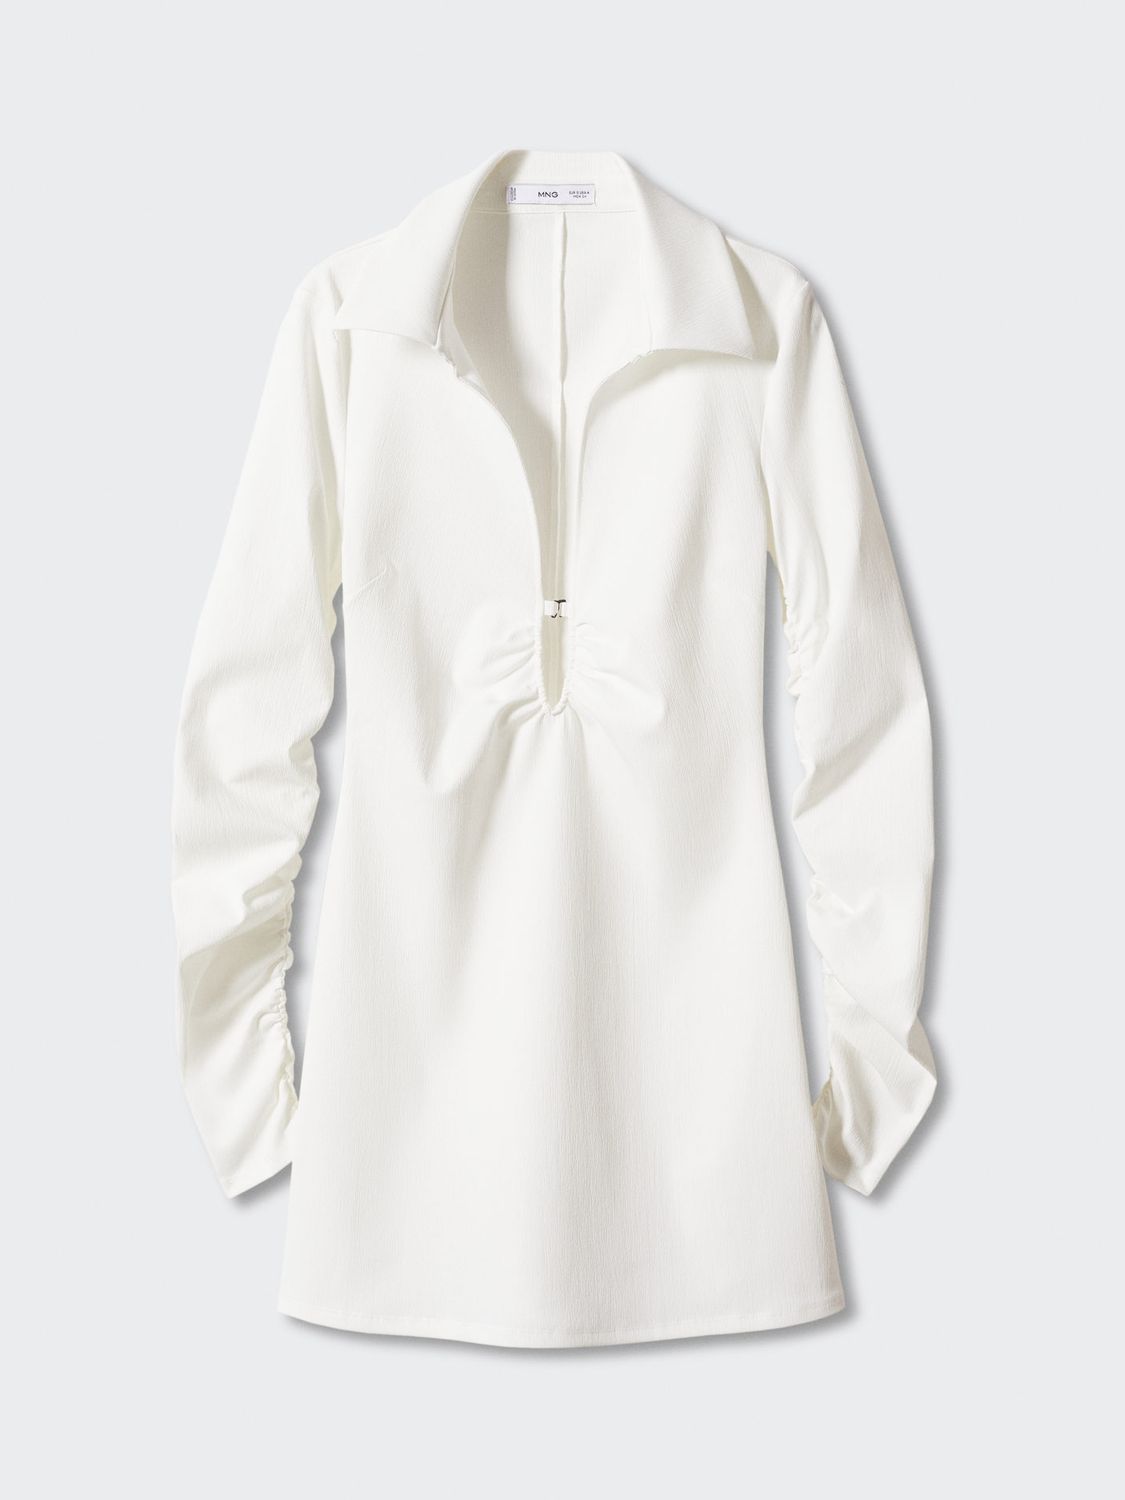 White shirt dress😍 Brand: John Lewis Size: Uk 12 ⁣ Price: N4000